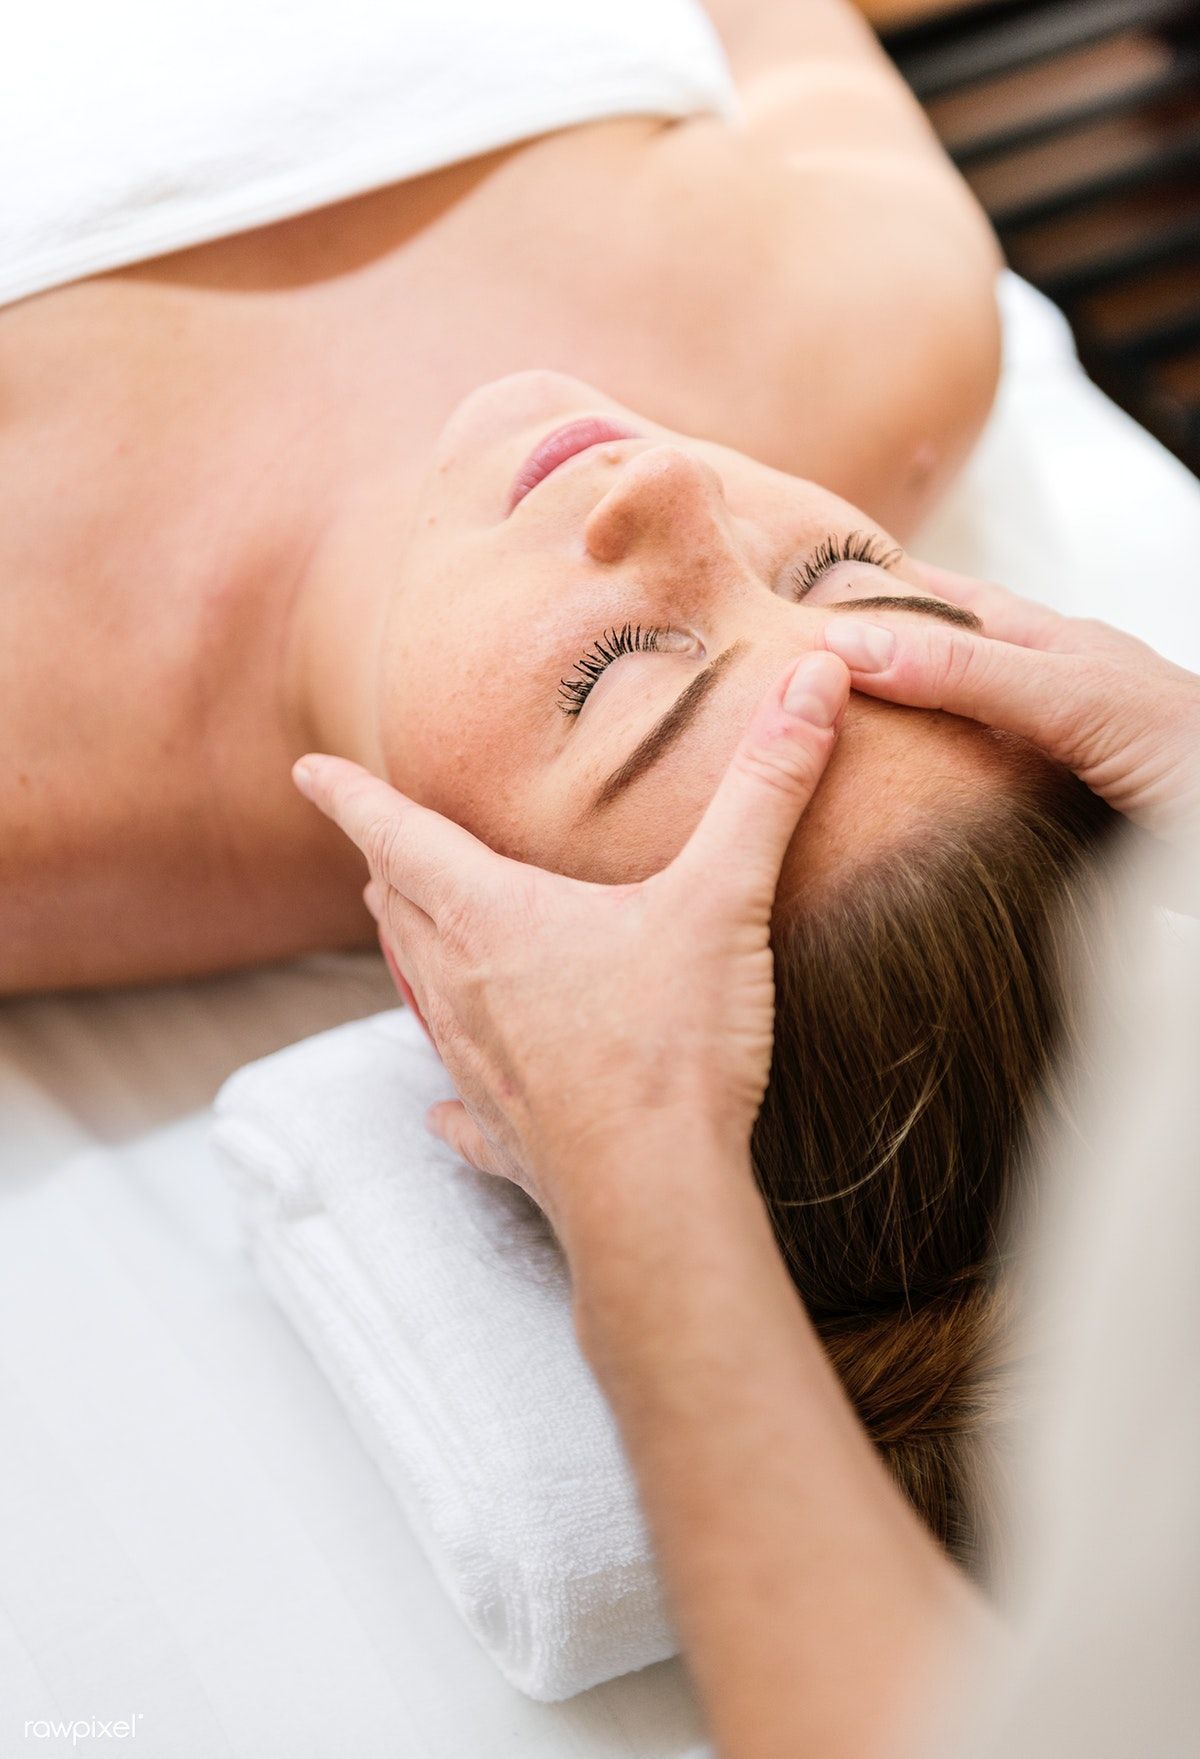 Download premium image of Spa salon therapy treatment 259425 - Download premium image of Spa salon therapy treatment 259425 -   16 beauty Therapy pictures ideas